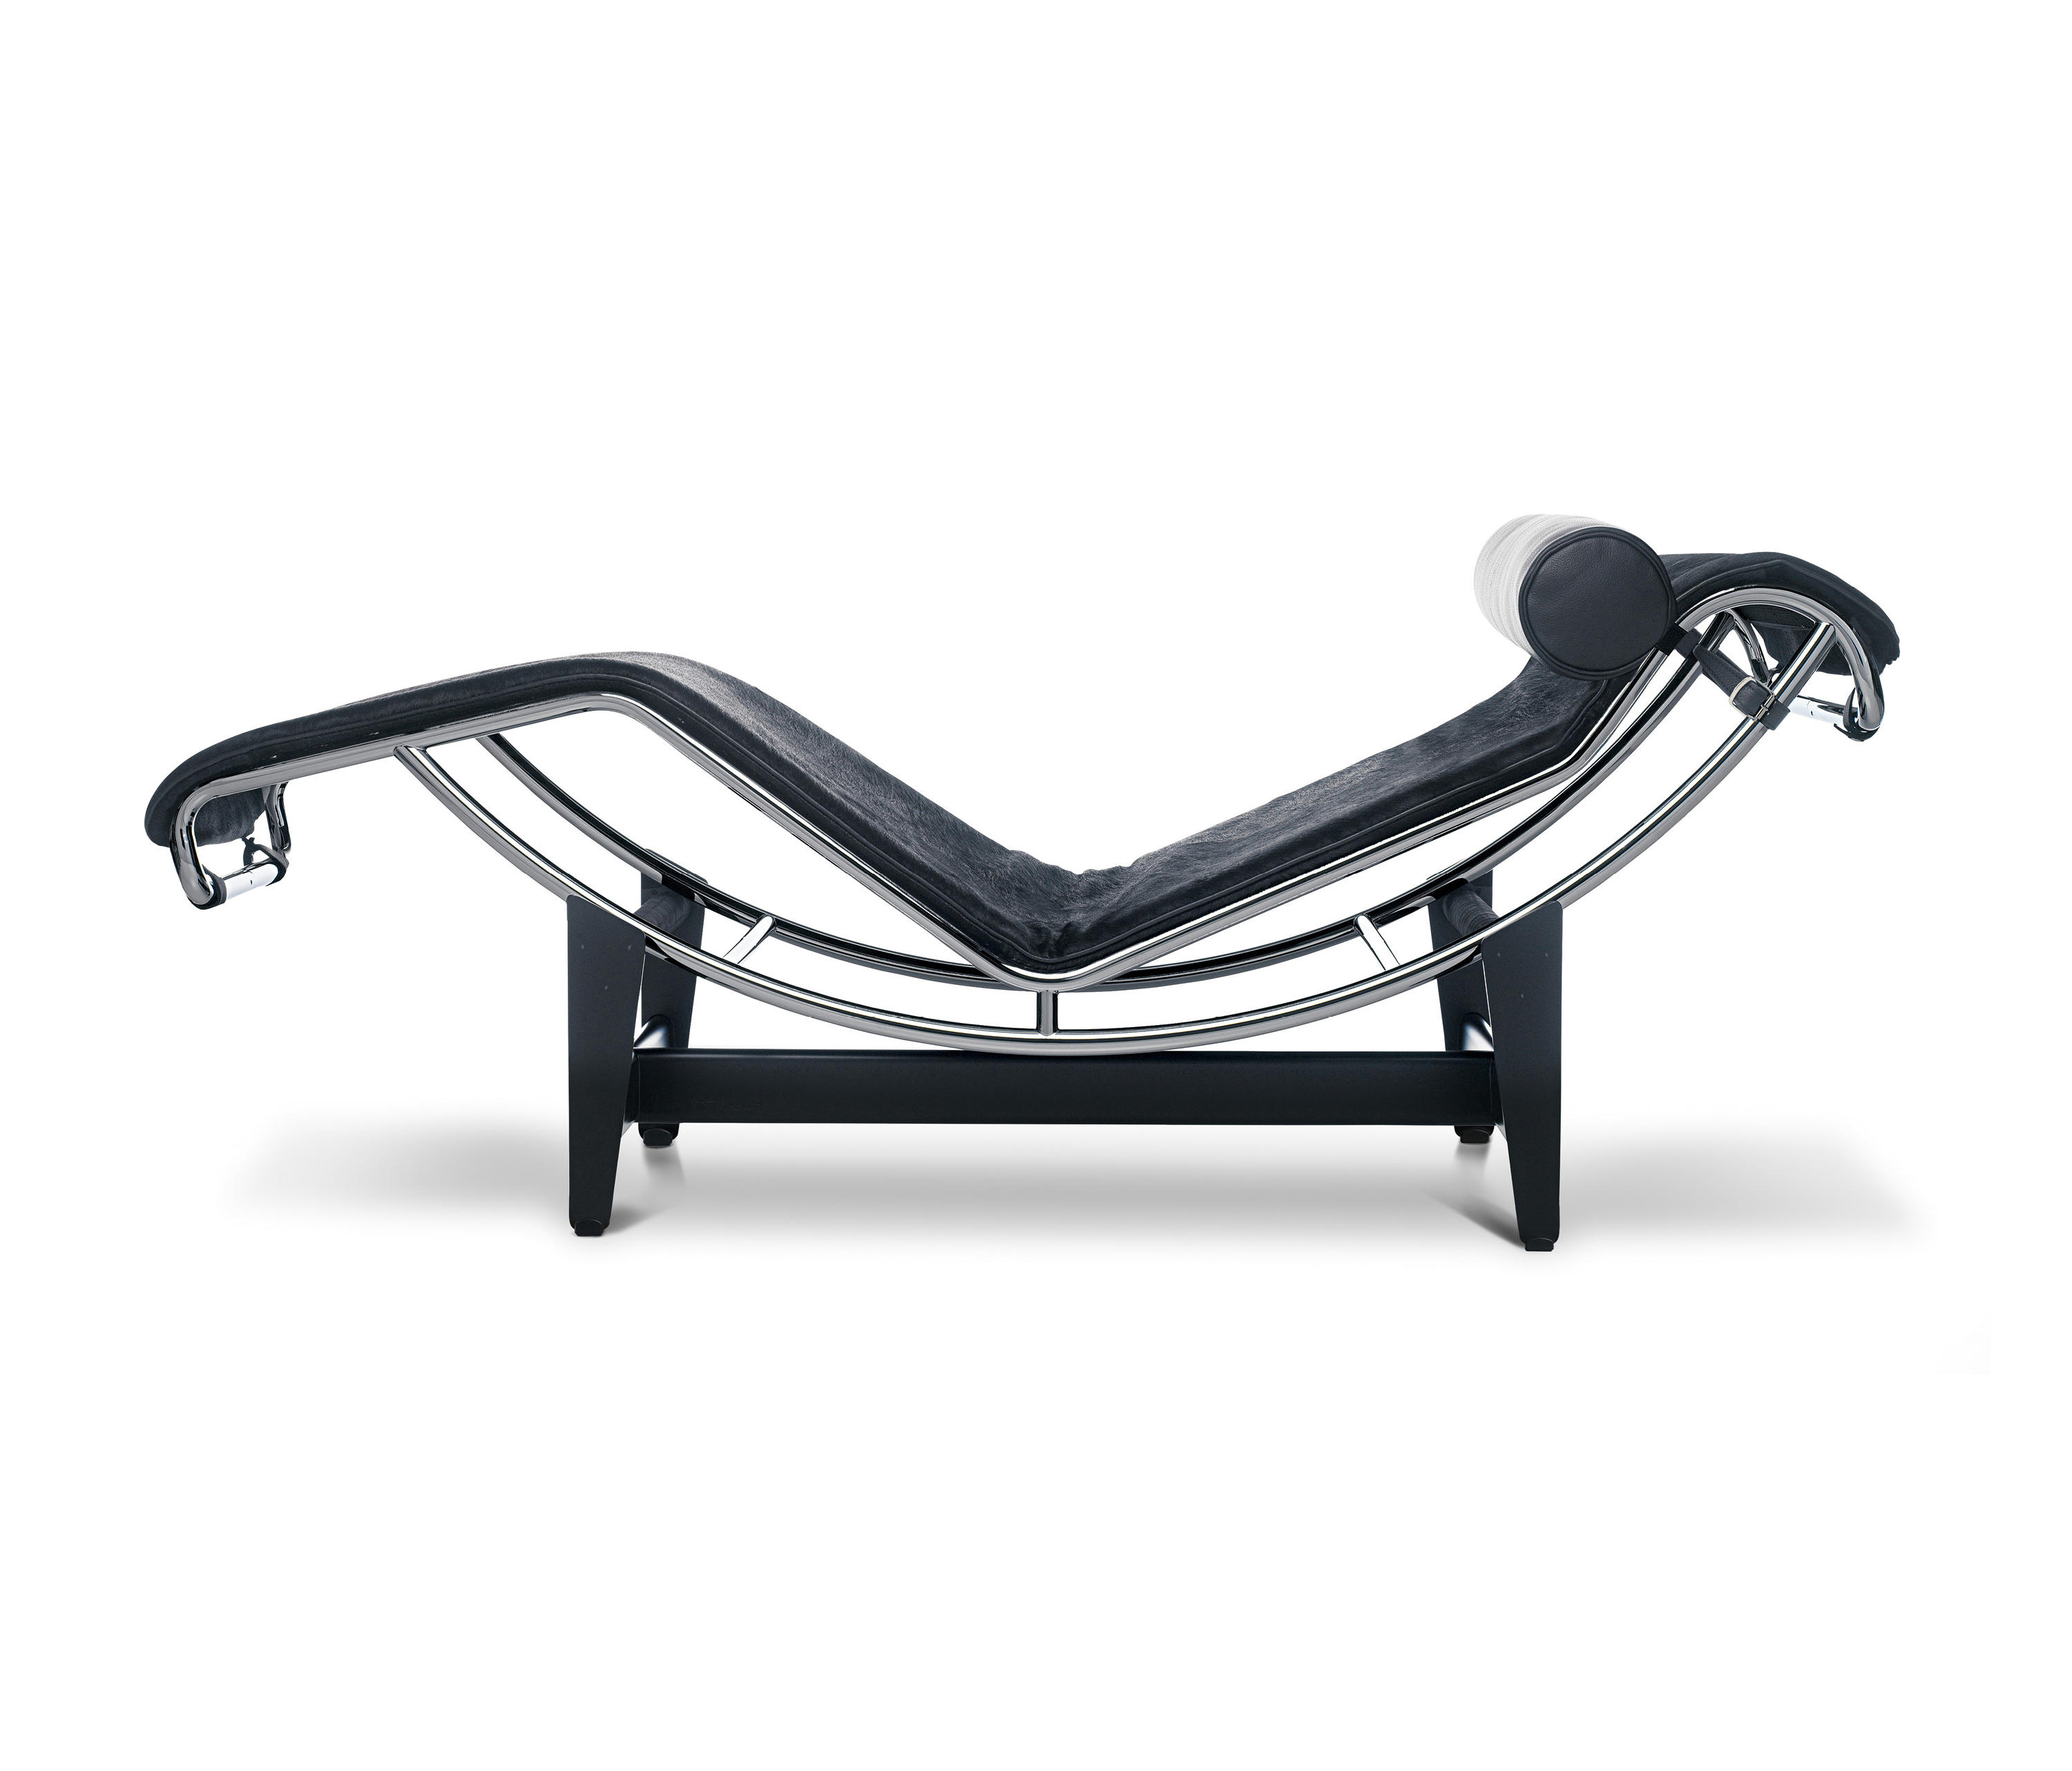 4 CHAISE LONGUE À REGLAGE CONTINU, DURABLE Chaise longue By Cassina |  design Le Corbusier, Pierre Jeanneret, Charlotte Perriand